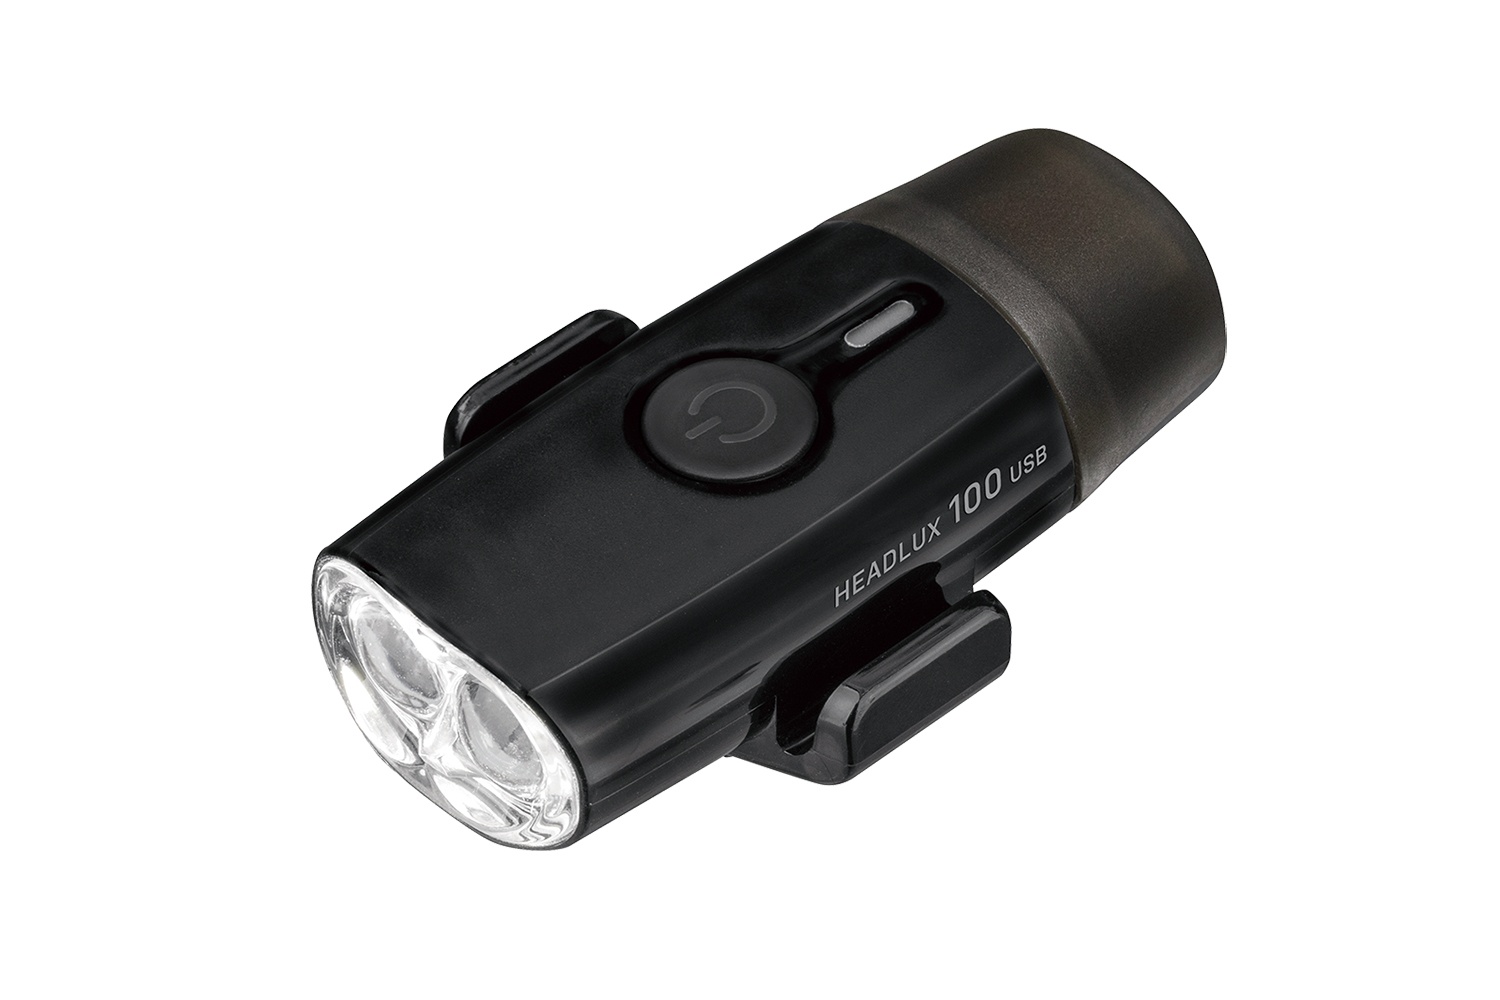  Передний фонарь для велосипеда Topeak Headlux 100 USB